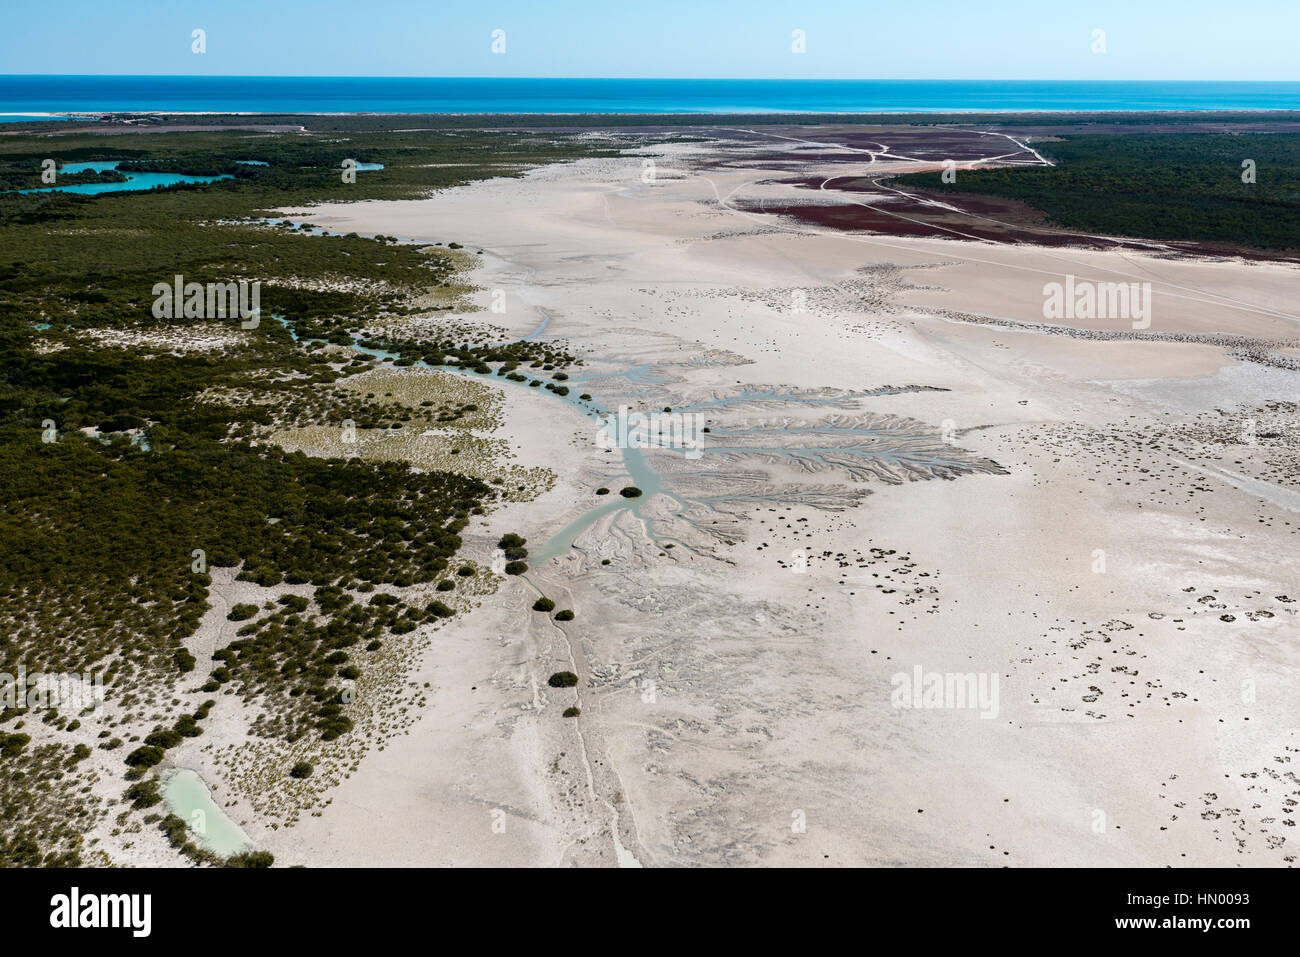 Patrones de drenaje dendrítica en la arena de un pantano de marea en marea baja. Foto de stock